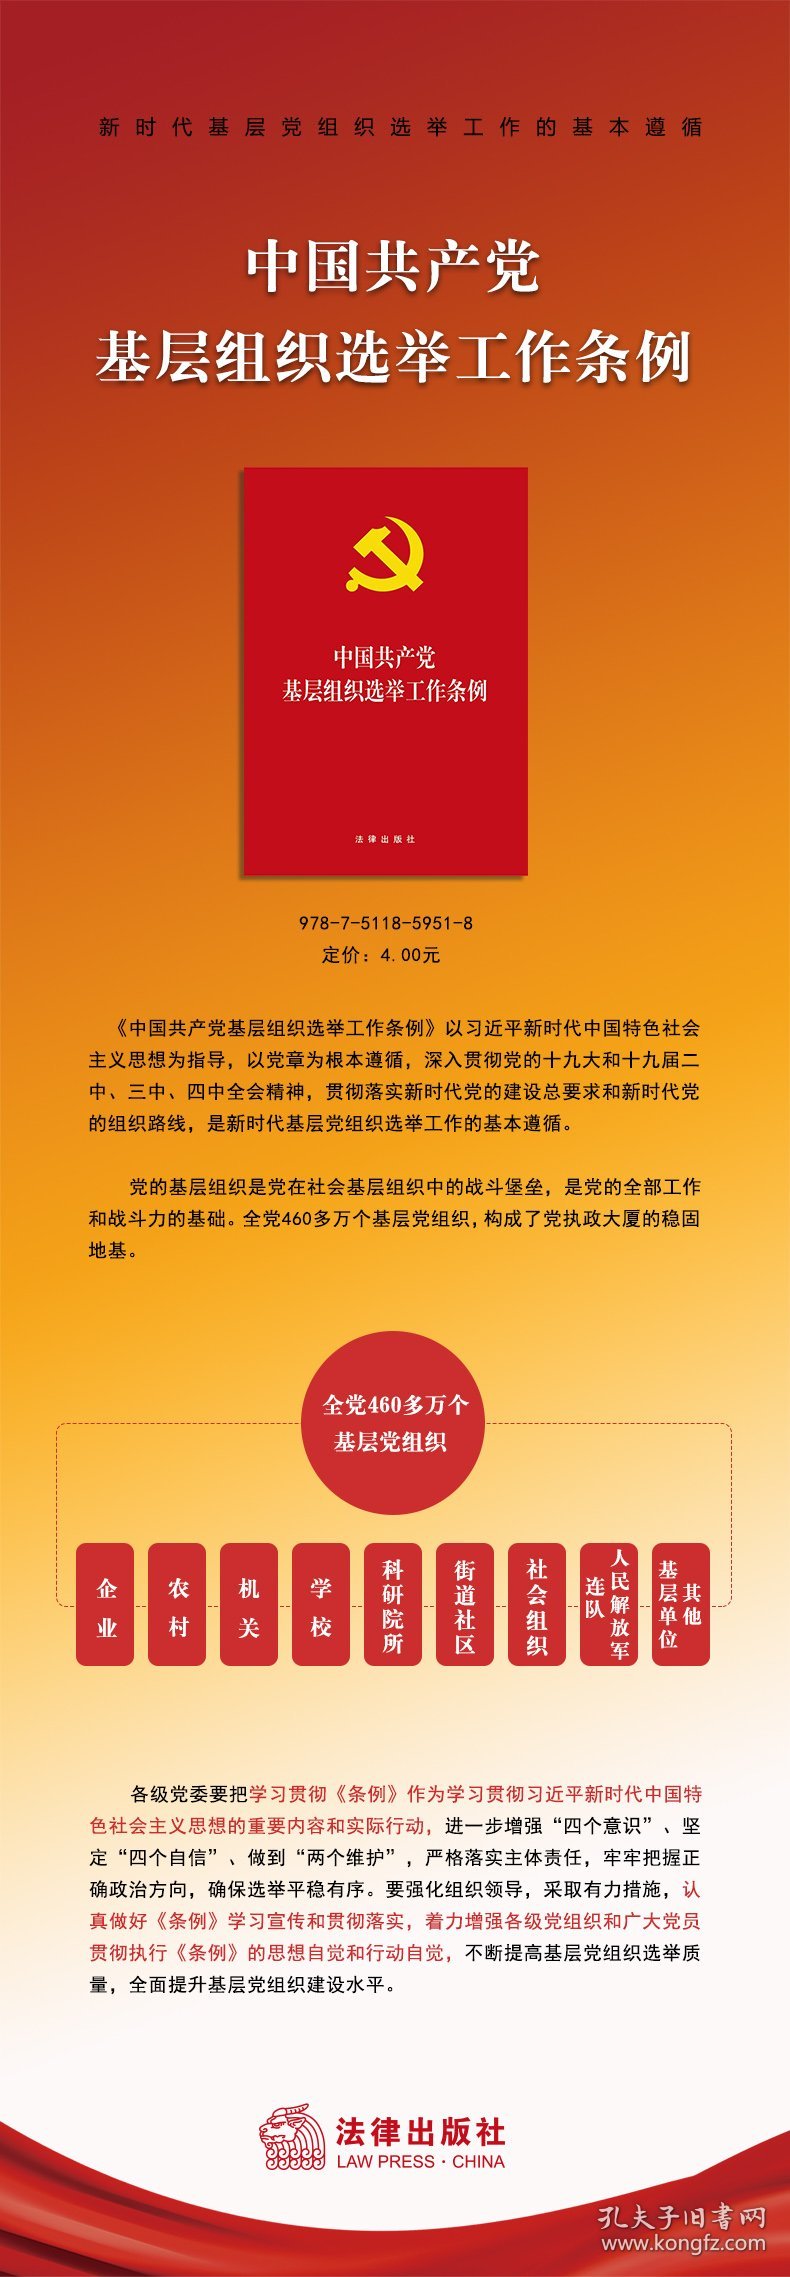 新华正版 中国共产党基层组织选举工作条例 法律出版社 编 9787511859518 中国法律图书有限公司